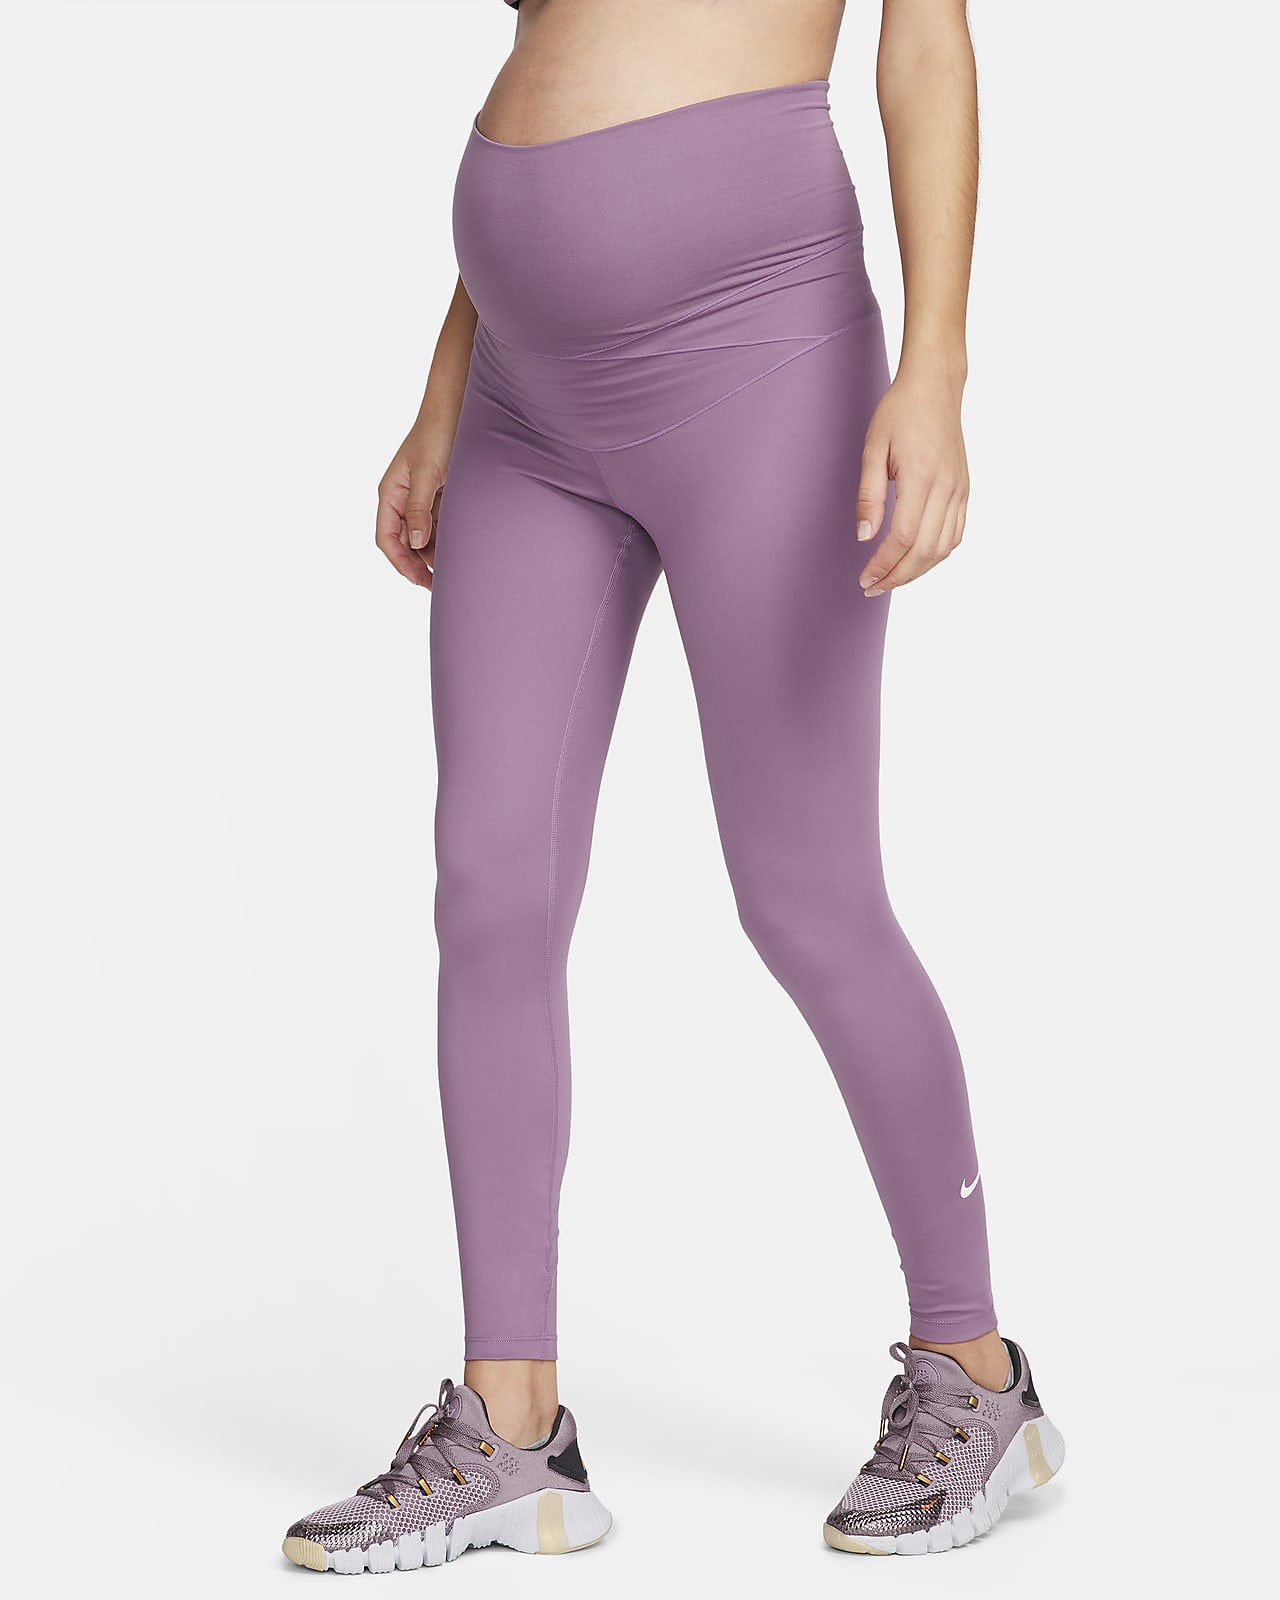 Leggings de cintura subida Nike One (M) para mulher (Maternity